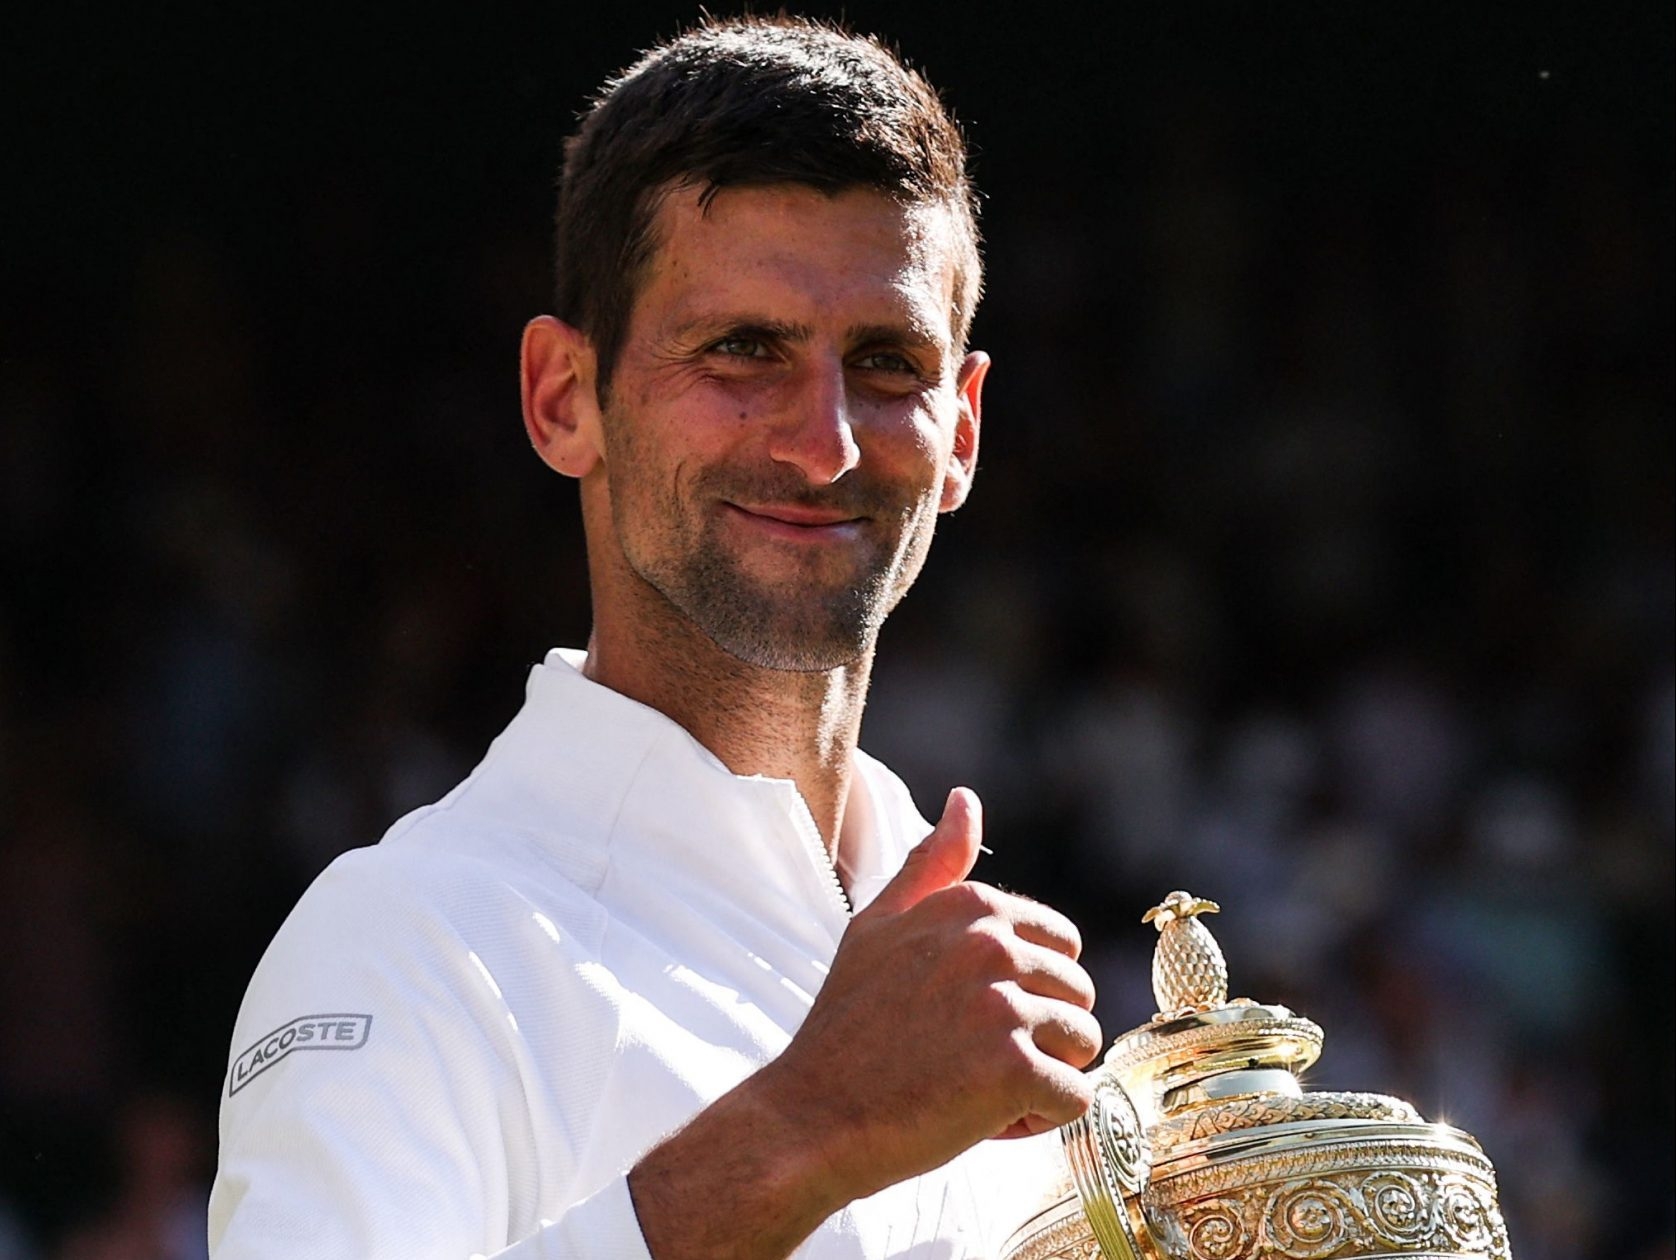 Unvaccinated Wimbledon champ Novak Djokovic will likely miss U.S. Open